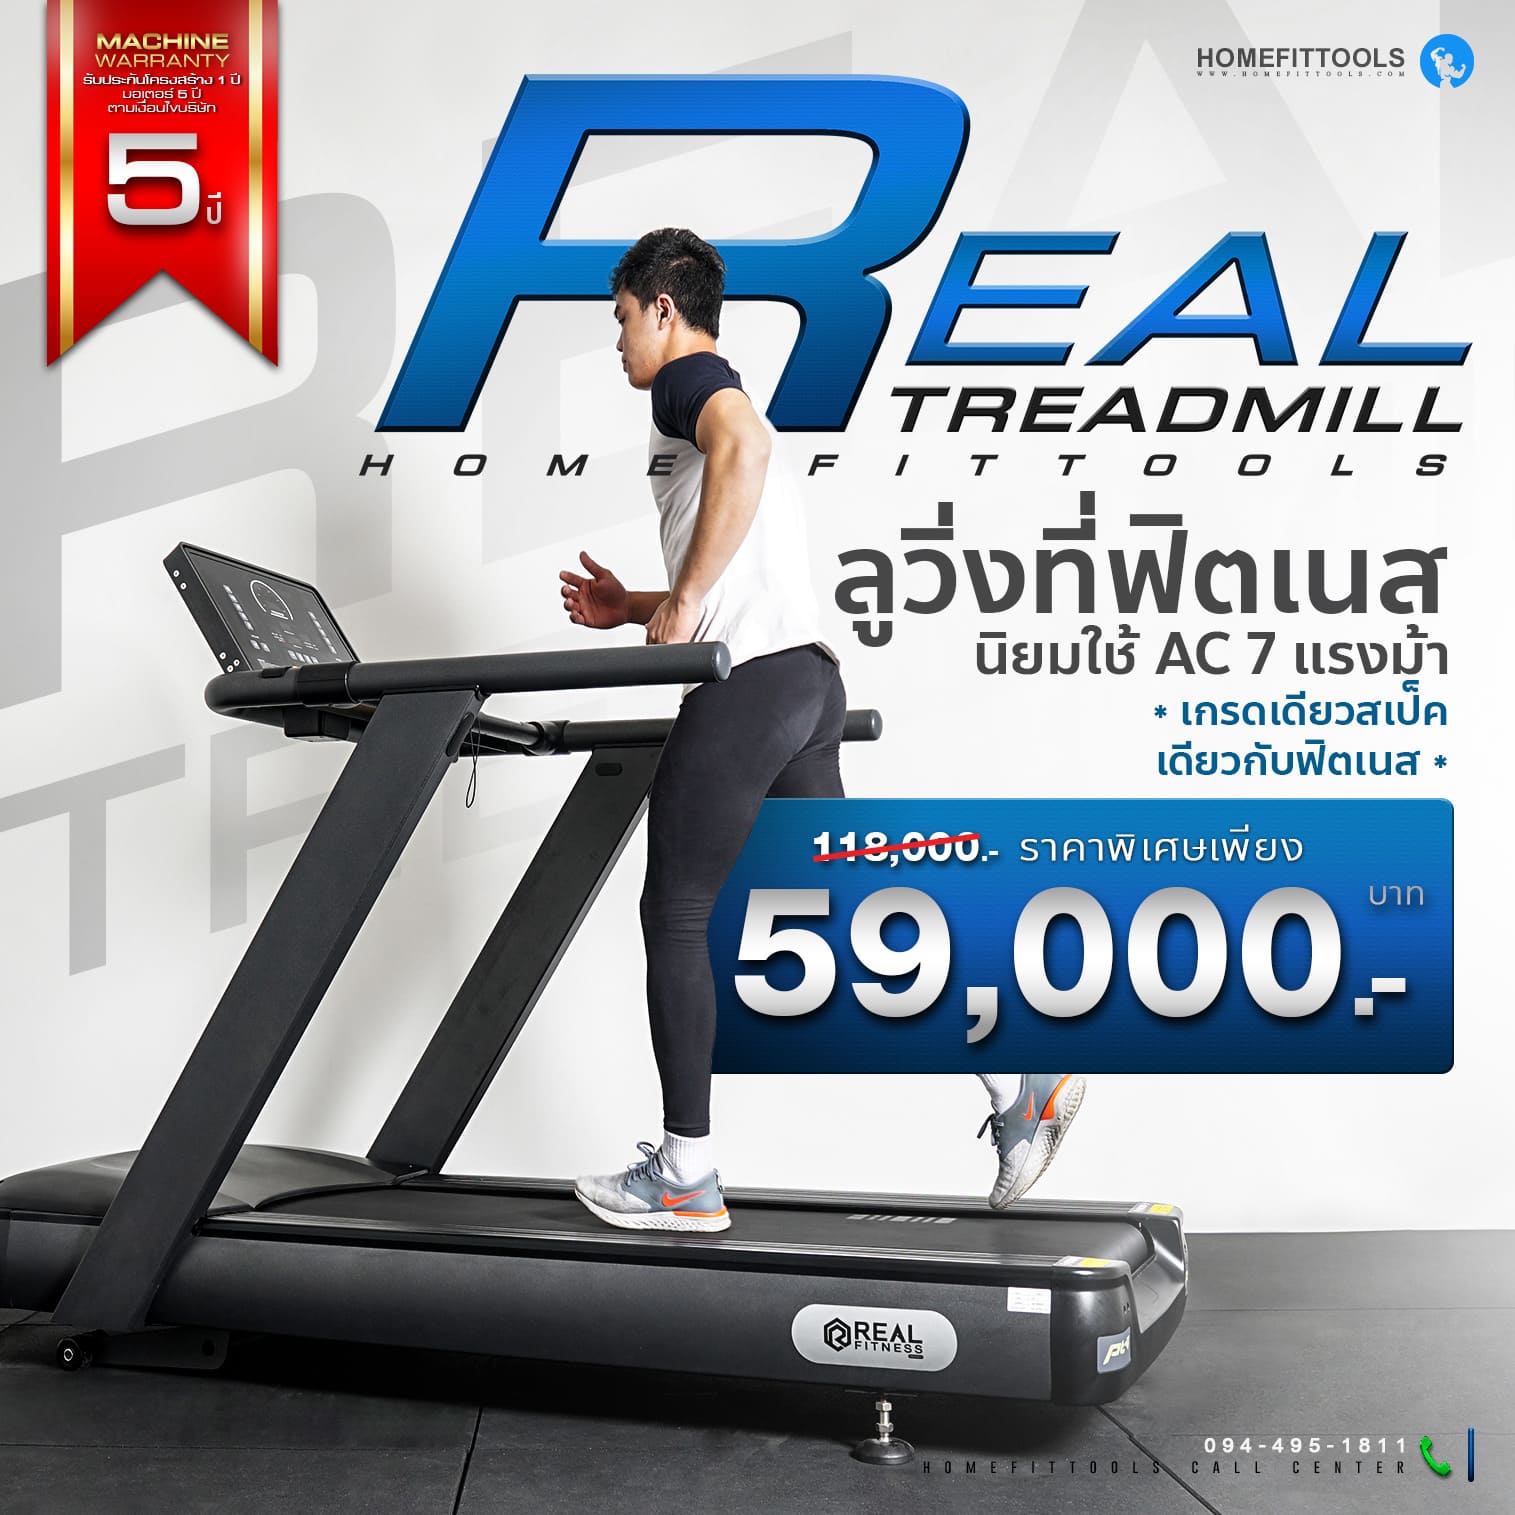 ลู่วิ่ง Treadmill รุ่น Real เครื่องออกกำลังกาย ลู่วิ่งออกกำลังกาย ลู่วิ่งราคาถูก อุปกรณ์ฟิตเนส Homefittools